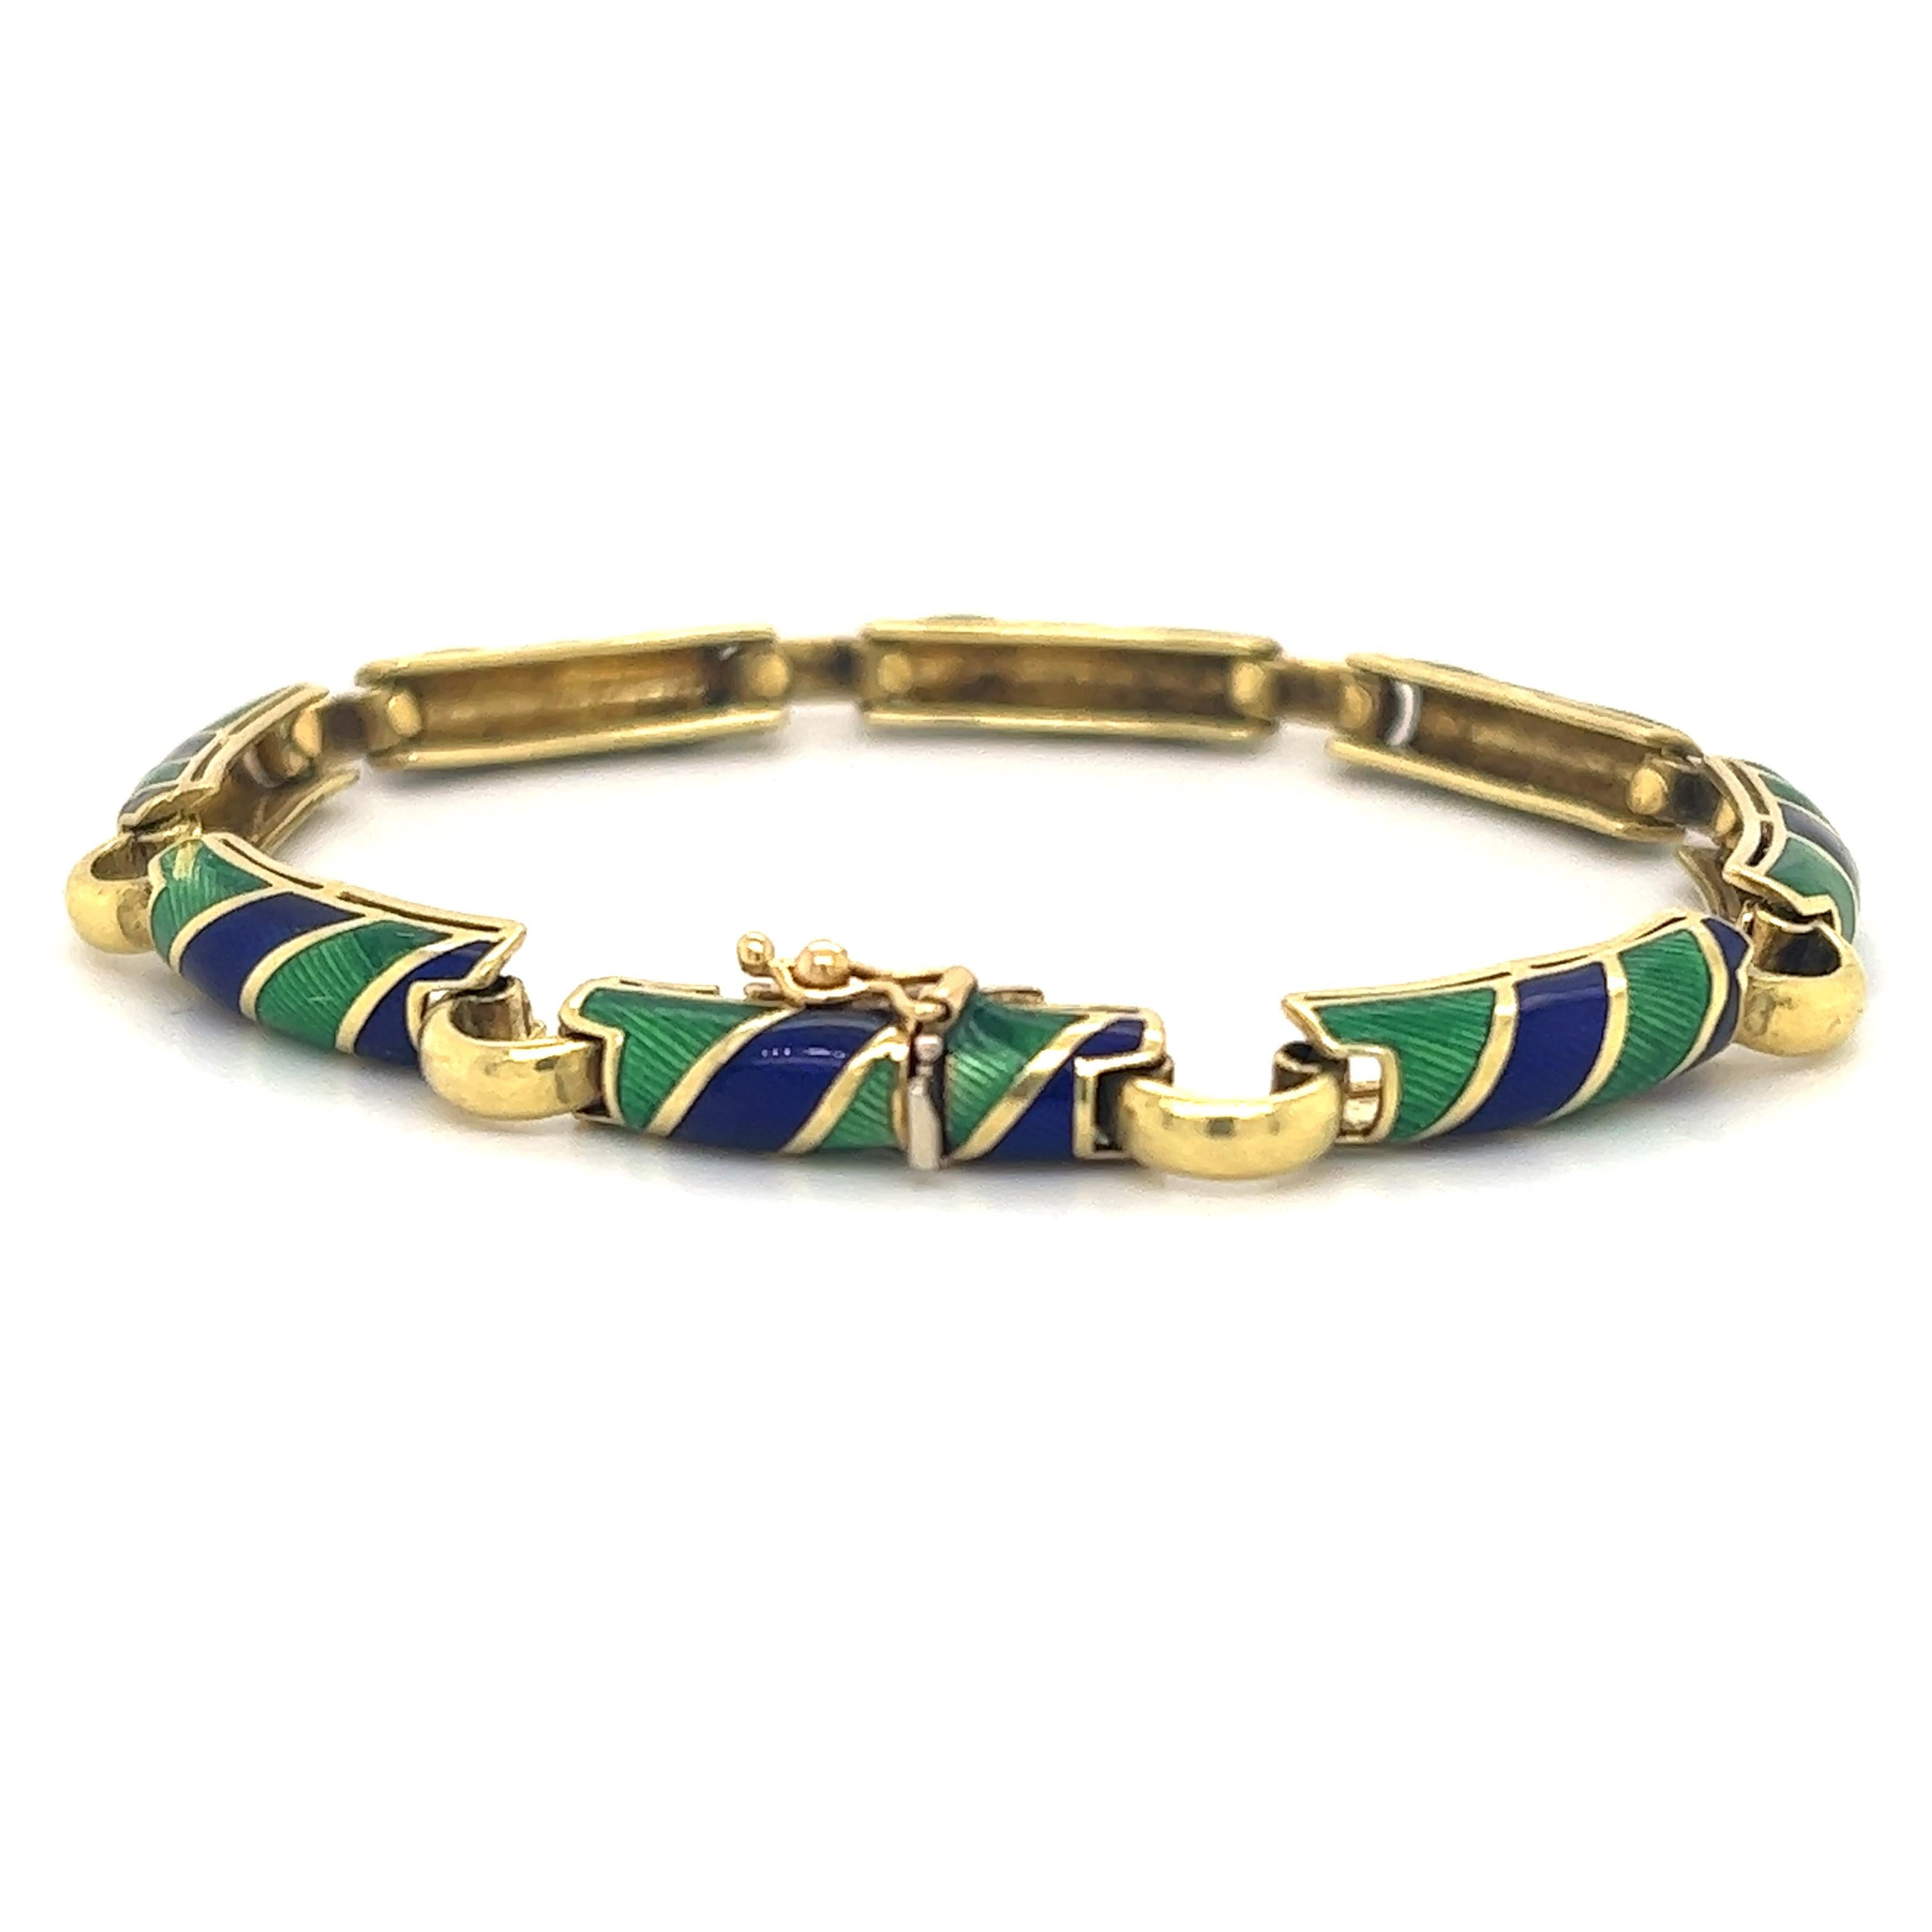 Magnifique bracelet en or jaune 18 carats. Le bracelet est fabriqué par le célèbre designer italien Uno-A-Erre.  Le bracelet est rehaussé d'émaux de guiloche verts et bleus.  Les couleurs vertes et bleues de ce bracelet sont éclatantes et